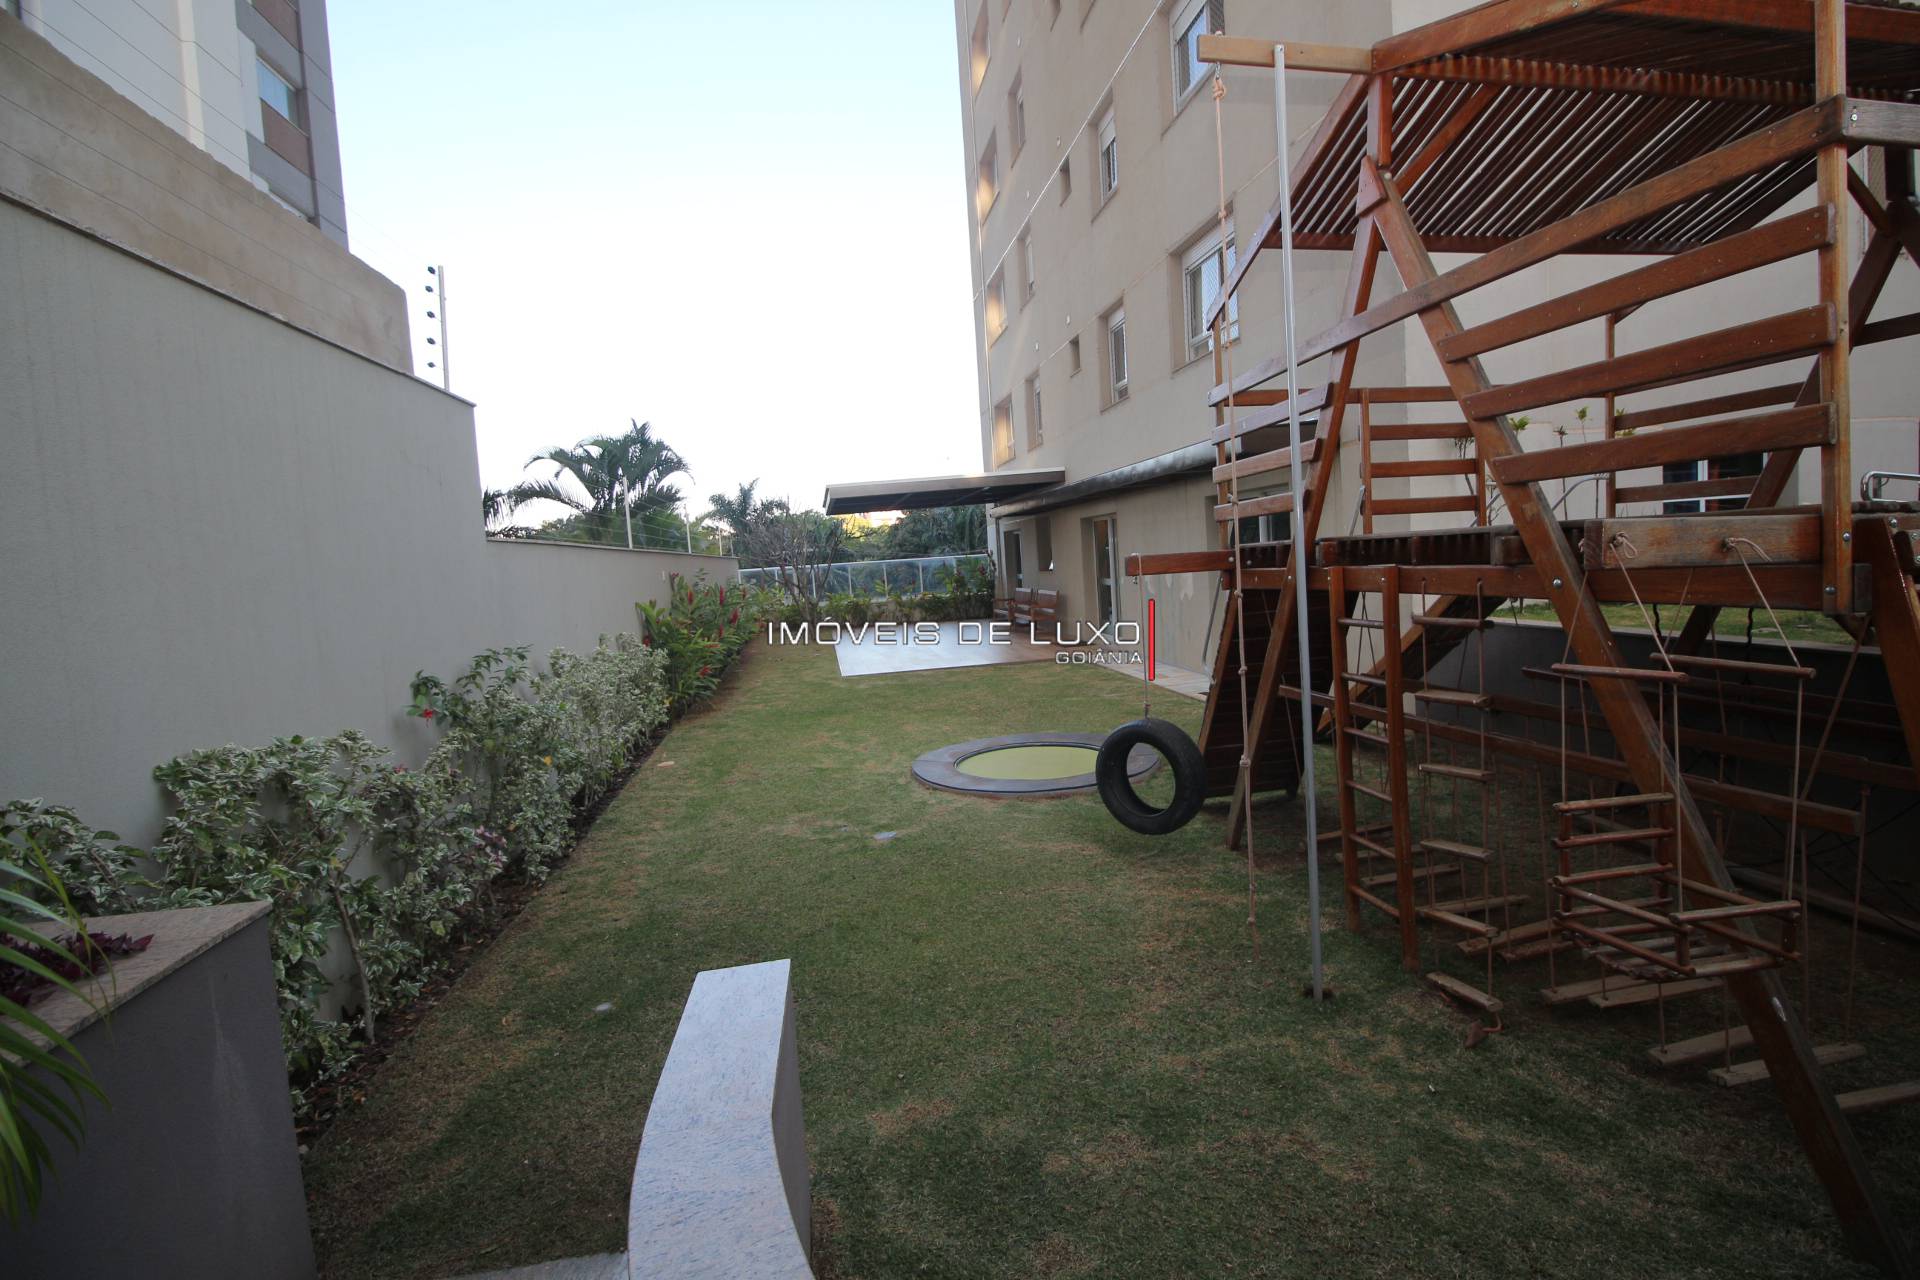 Imóveis de Luxo - Apartamento 4 suítes em frente ao parque Areião